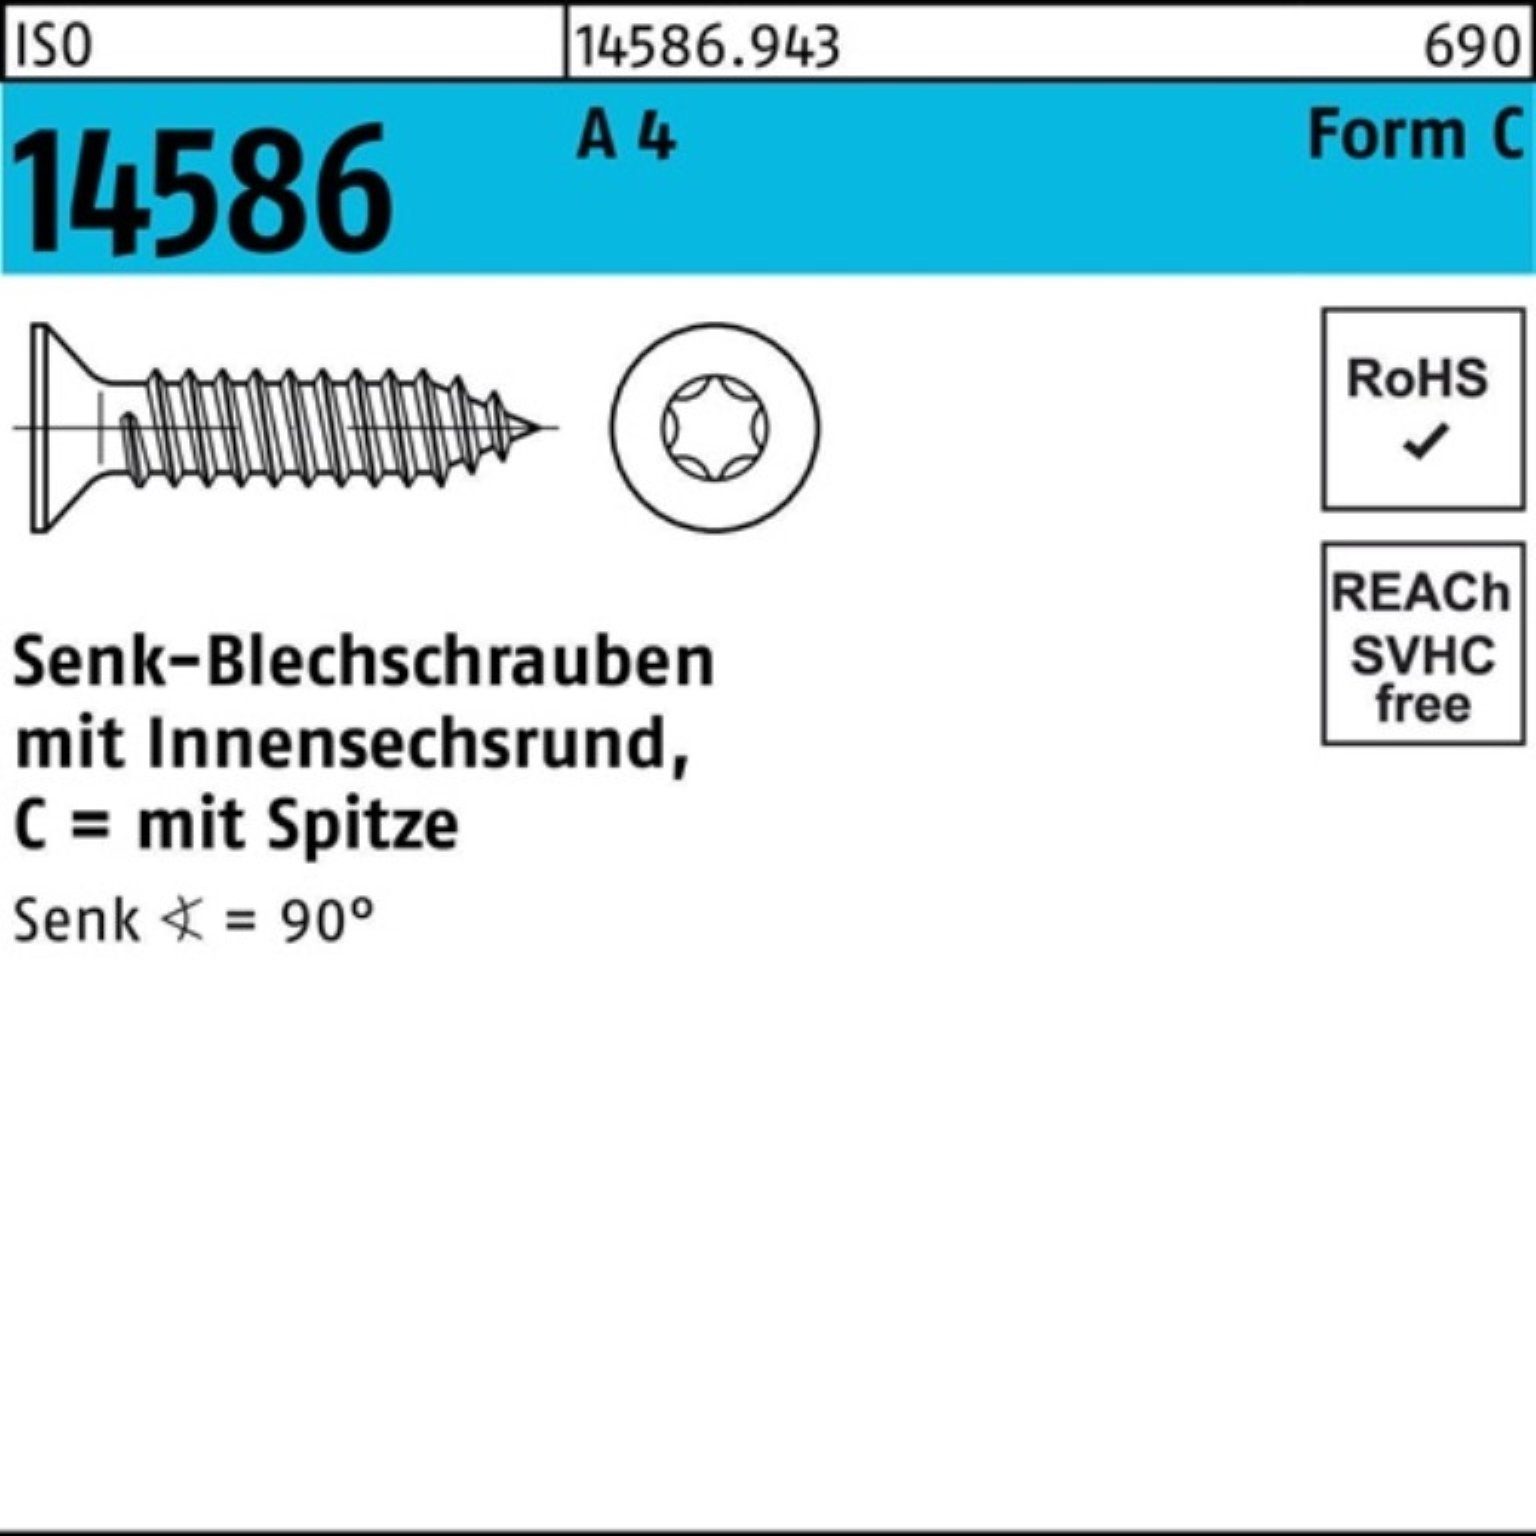 Reyher Schraube 250er Pack Senkblechschraube ISO 14586 ISR/Spitze 5,5x 80-T25 A 4 250